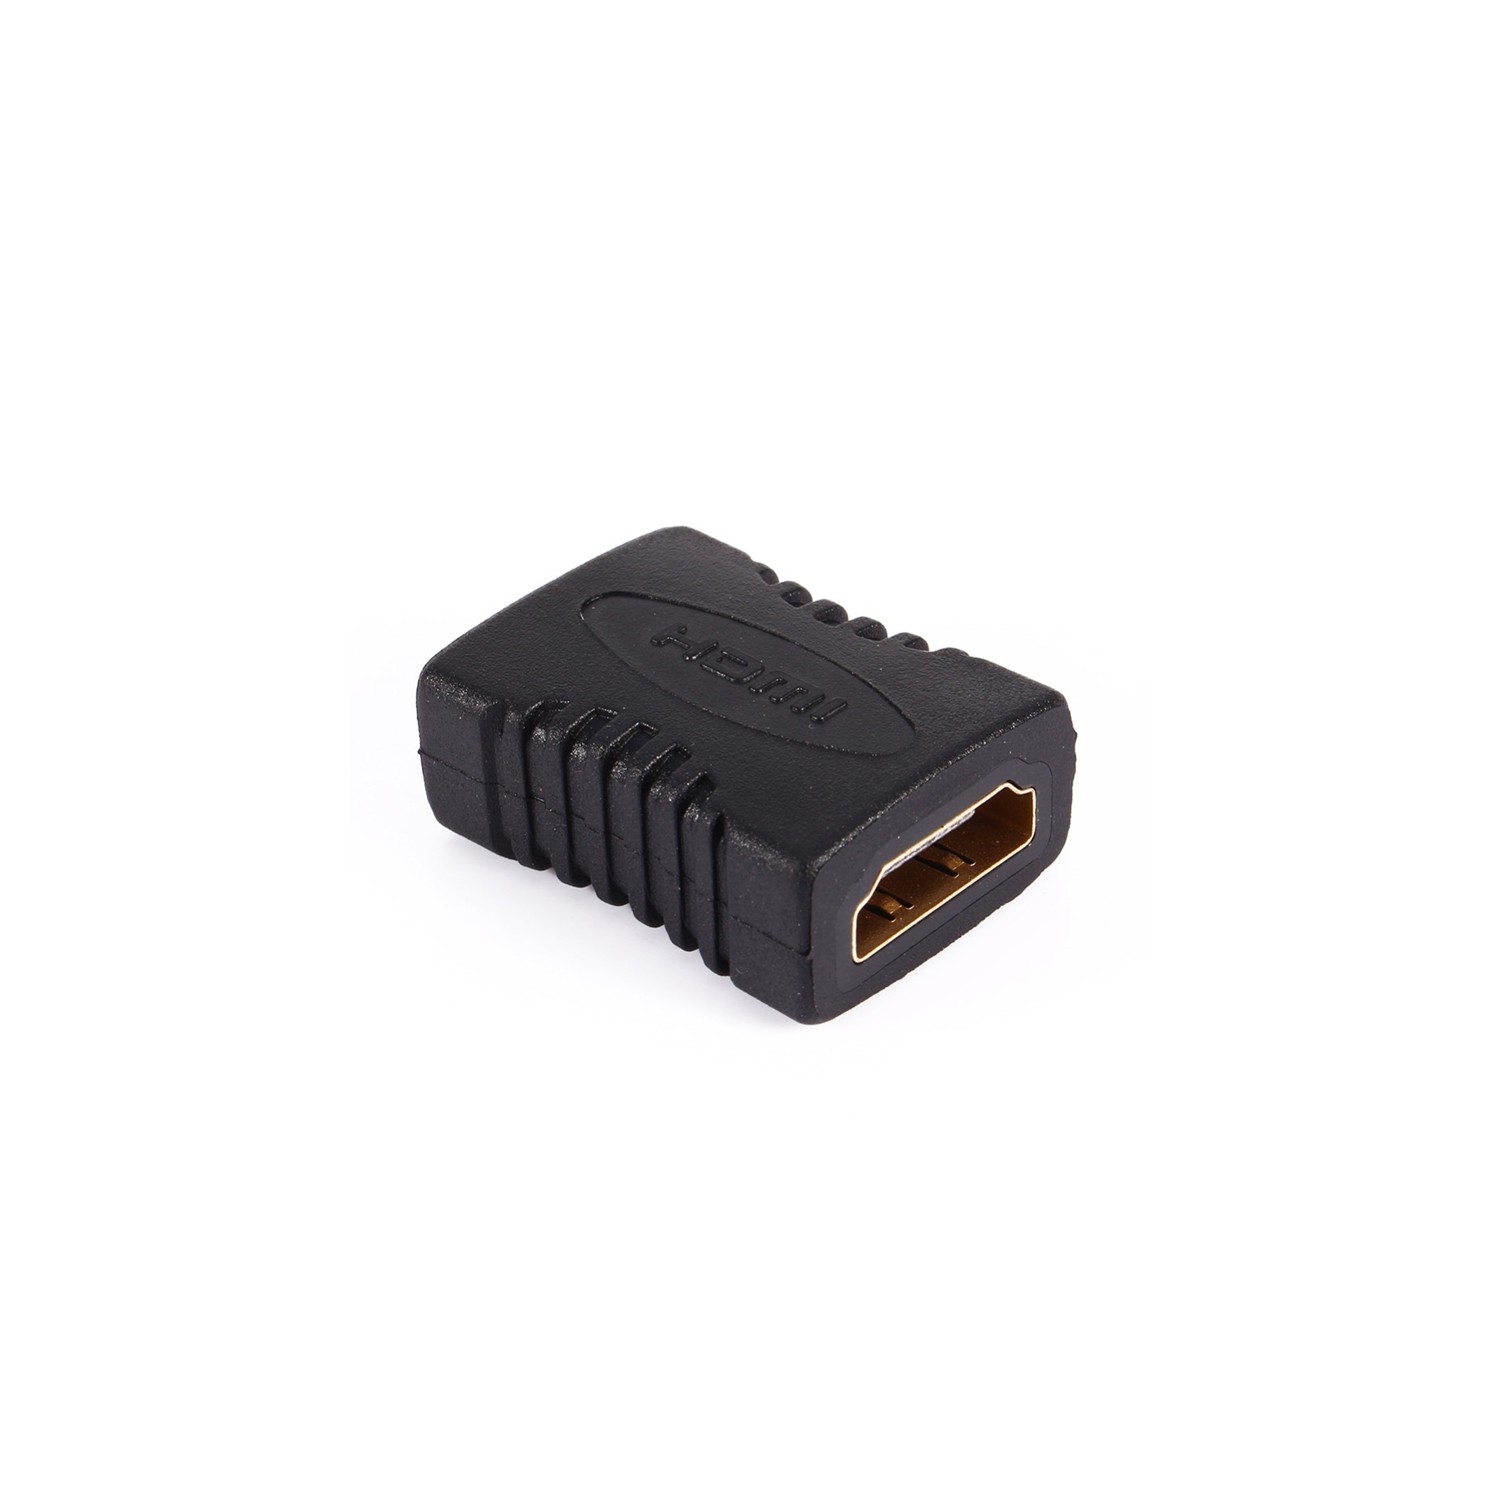 General COUPLEUR HDMI - Raccord HDMI femelle-femelle pour relier deux câble  hdmi à prix pas cher